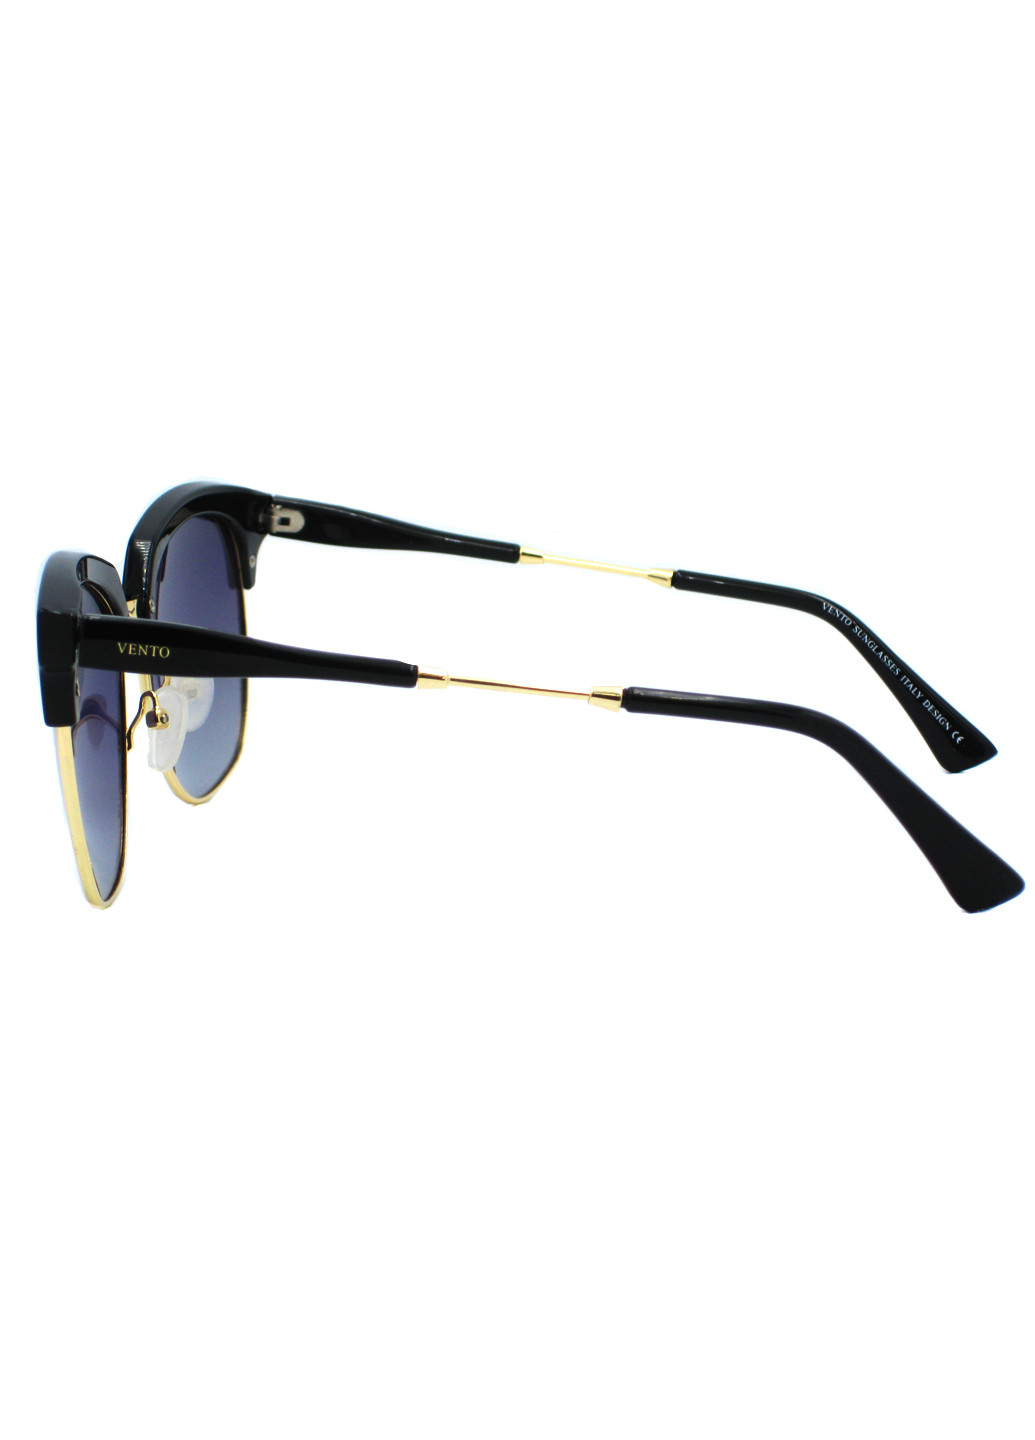 Cолнцезащітние окуляри Vento vns144 (203027062)